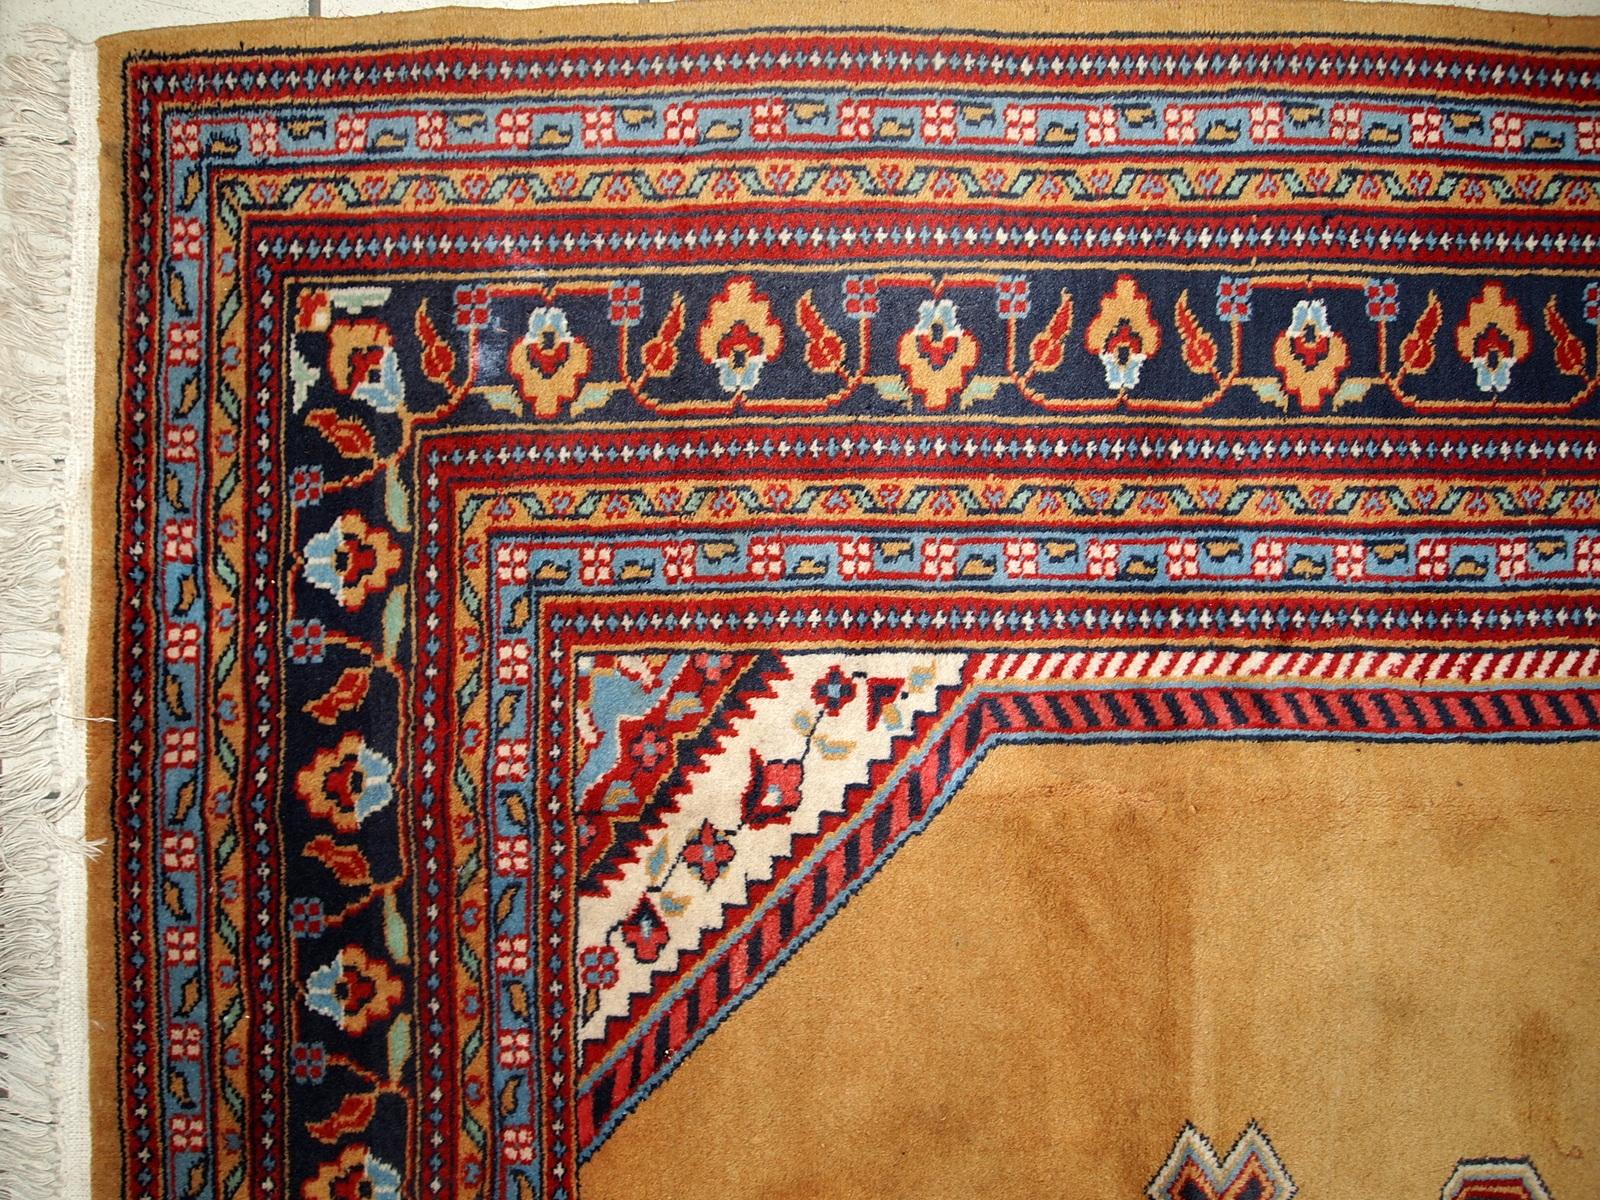 Usbekischer Buchara-Teppich in gutem Originalzustand aus der Mitte des 20. Jahrhunderts. Der Teppich ist aus gelber Wolle gefertigt. 

-Zustand: Original gut, 

-etwa 1960er Jahre,

-Größe: 5,4' x 8,5' (165cm x 260cm),

-Material: